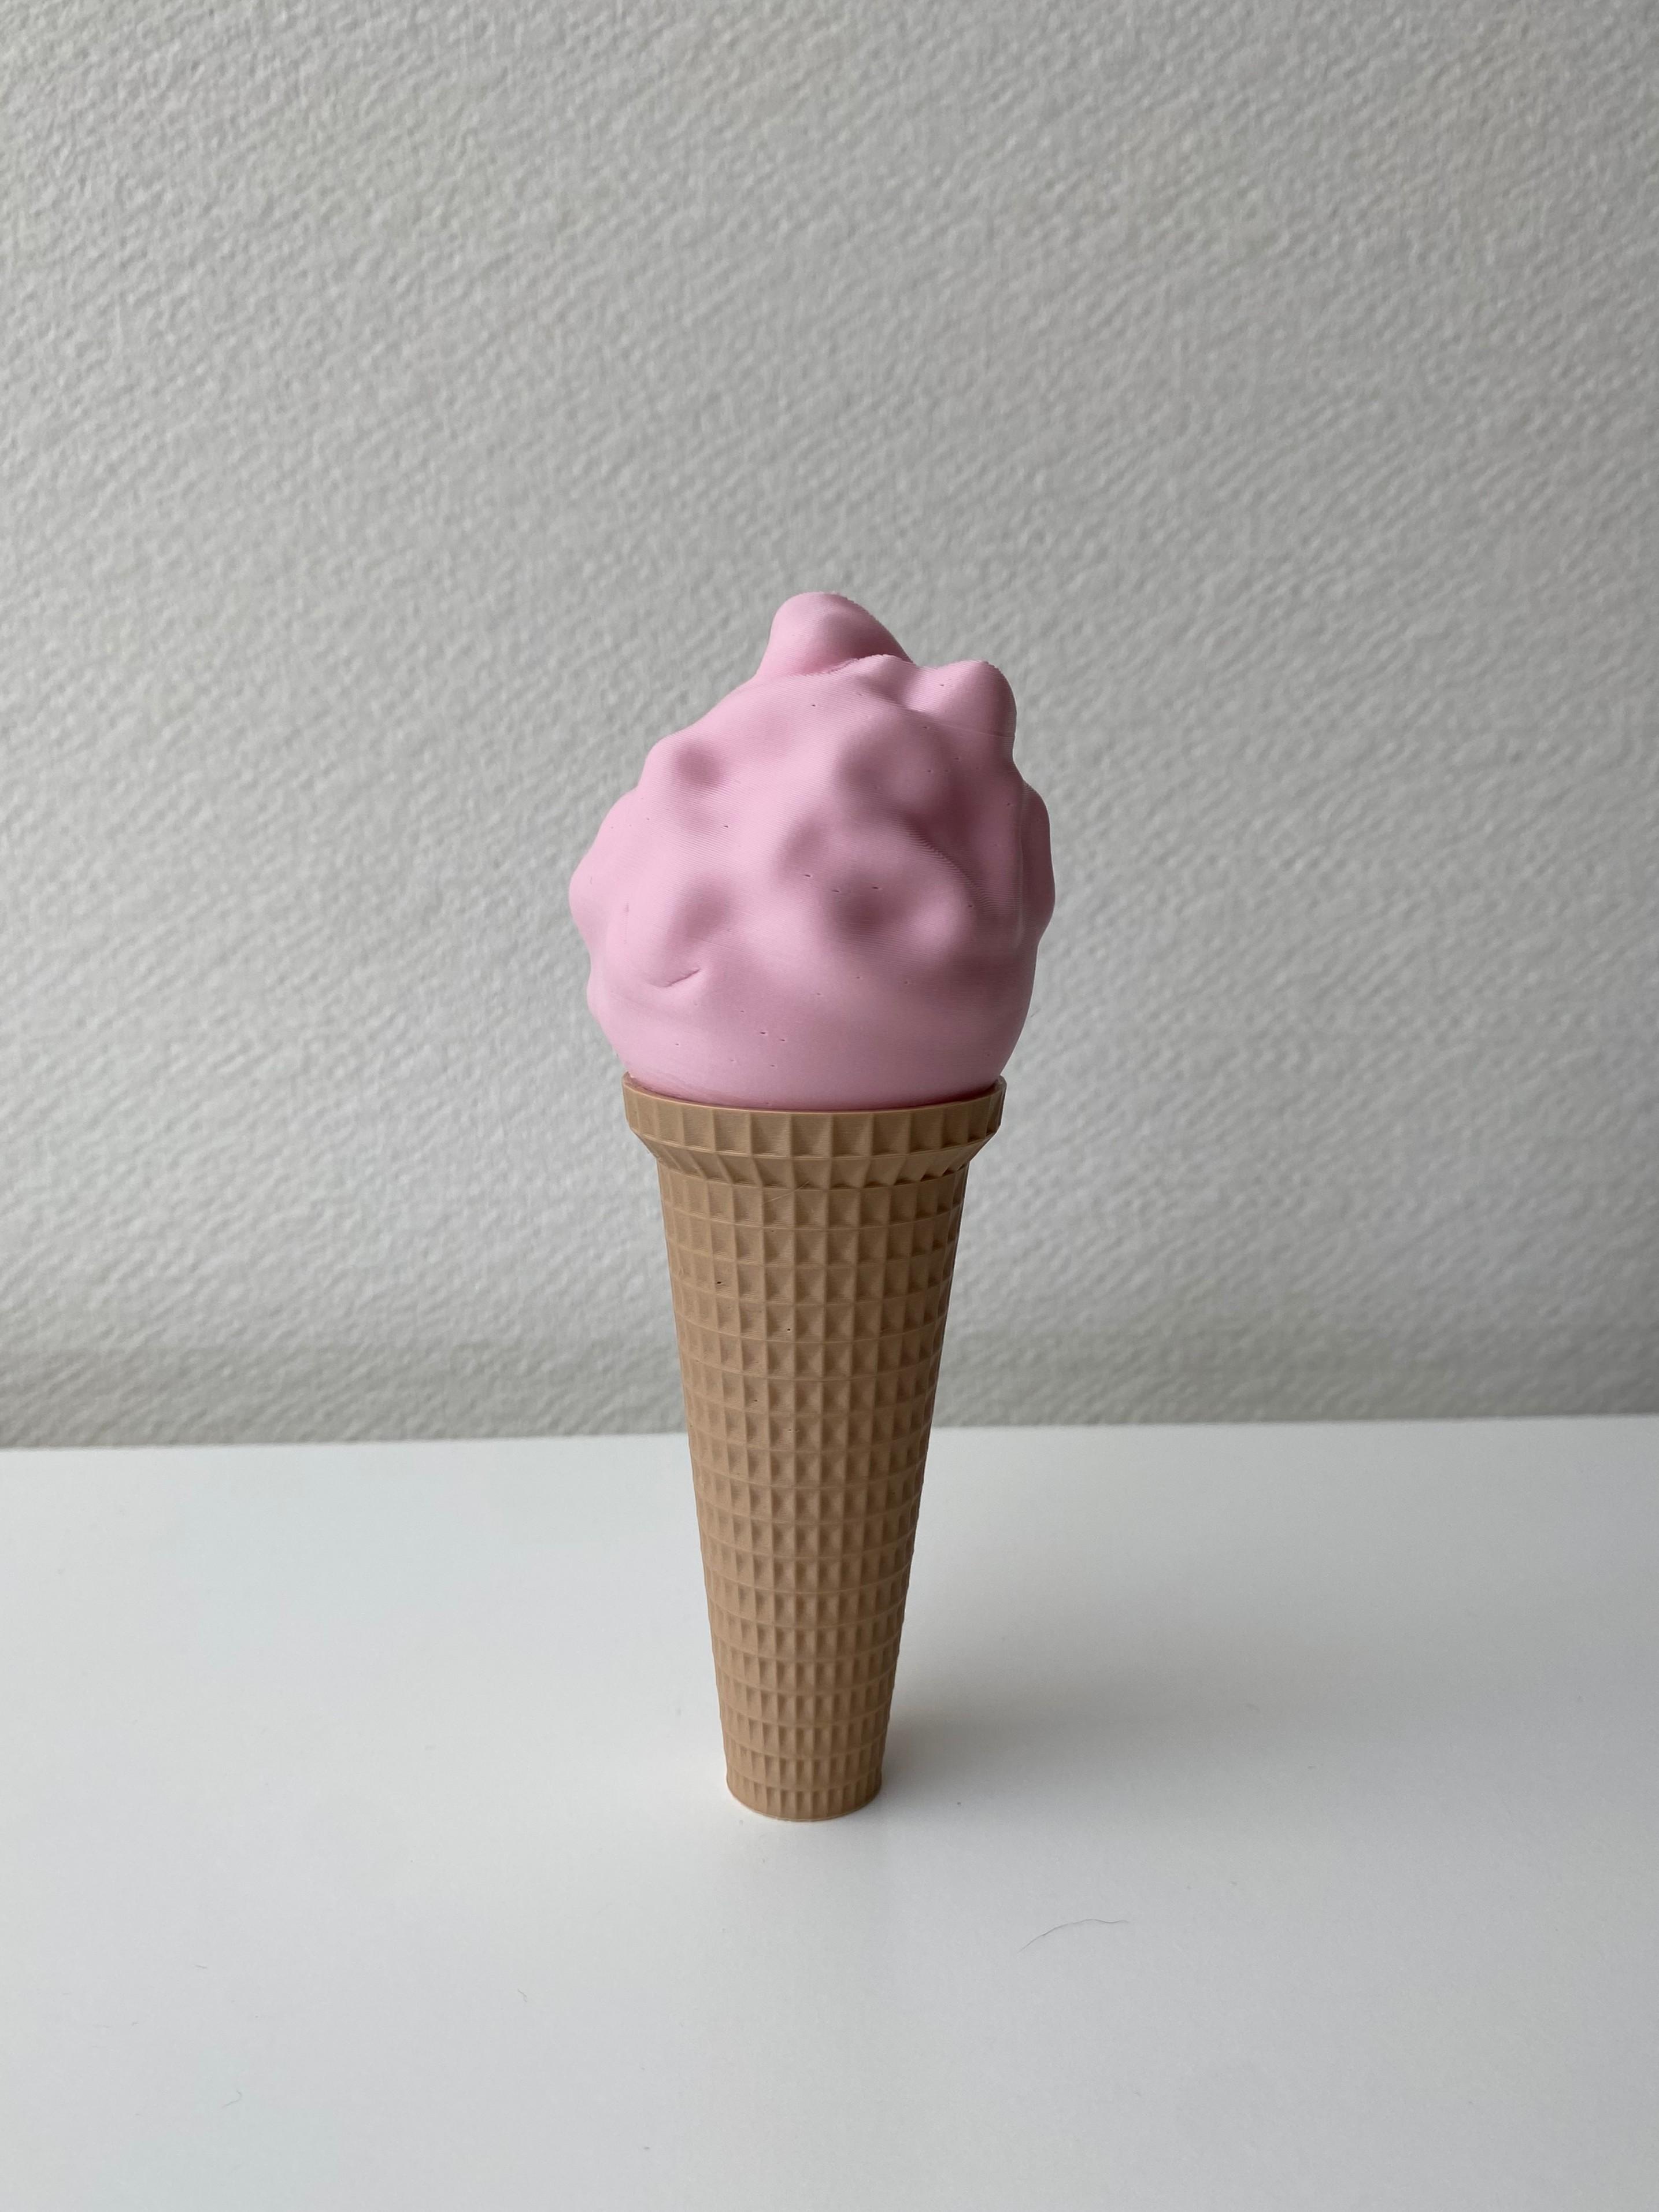 Giant Ice cream cone  3d model